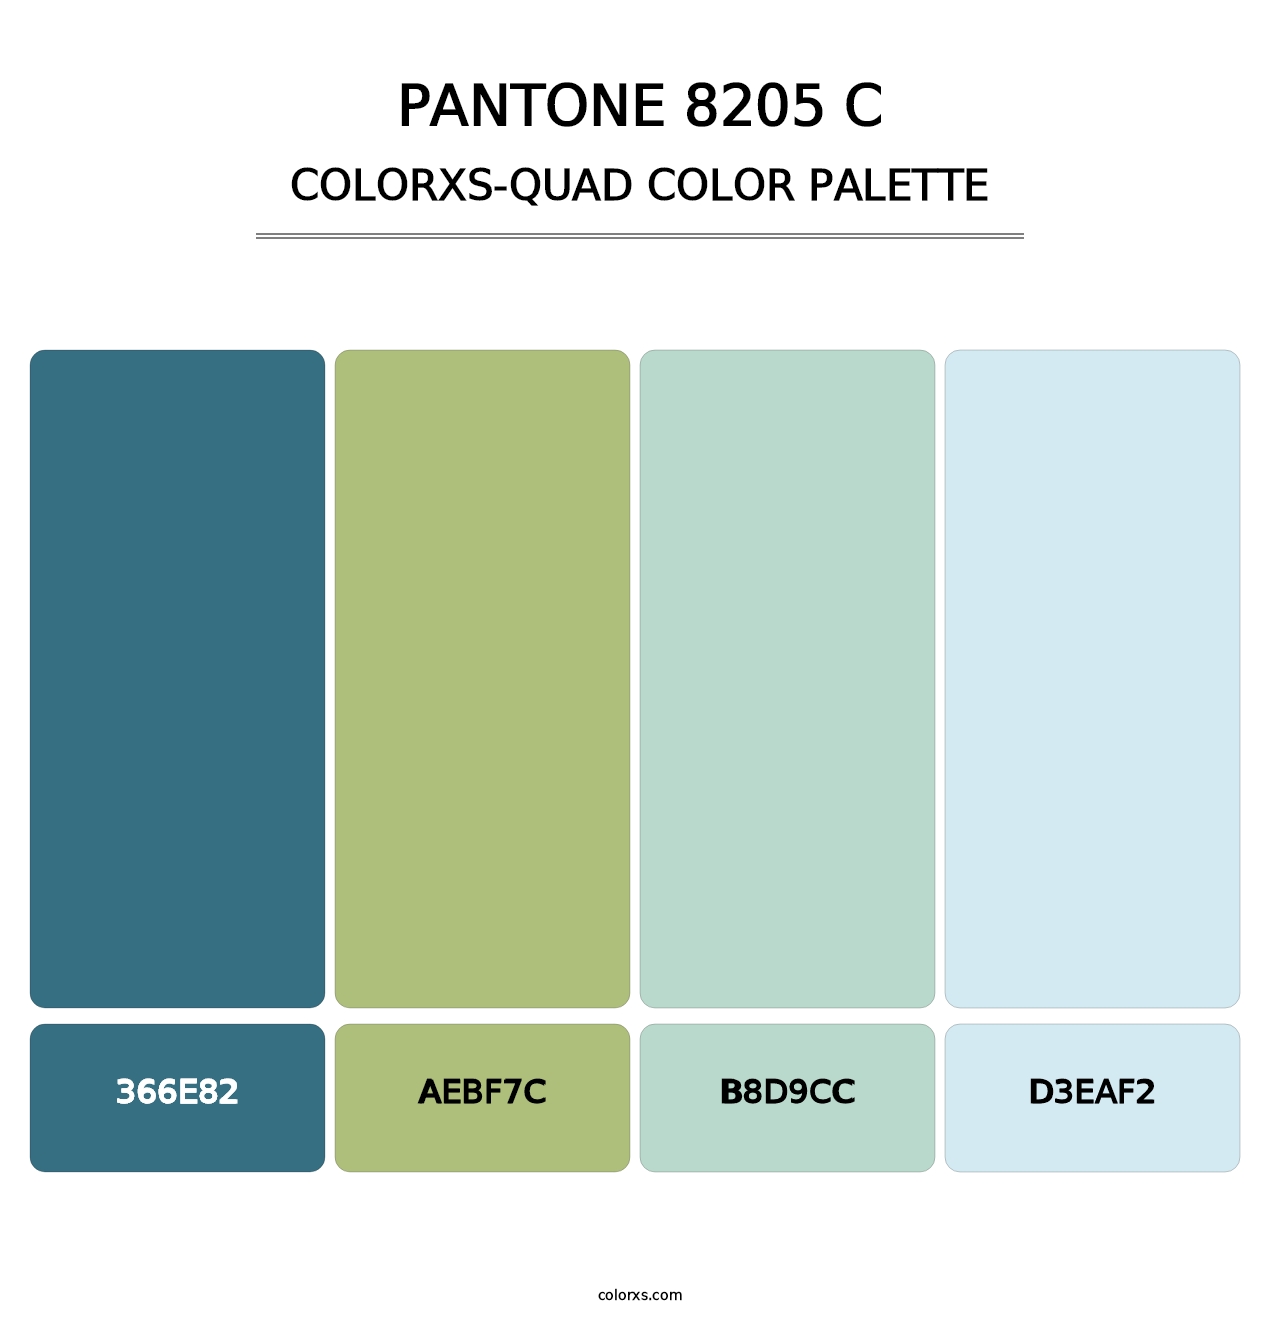 PANTONE 8205 C - Colorxs Quad Palette